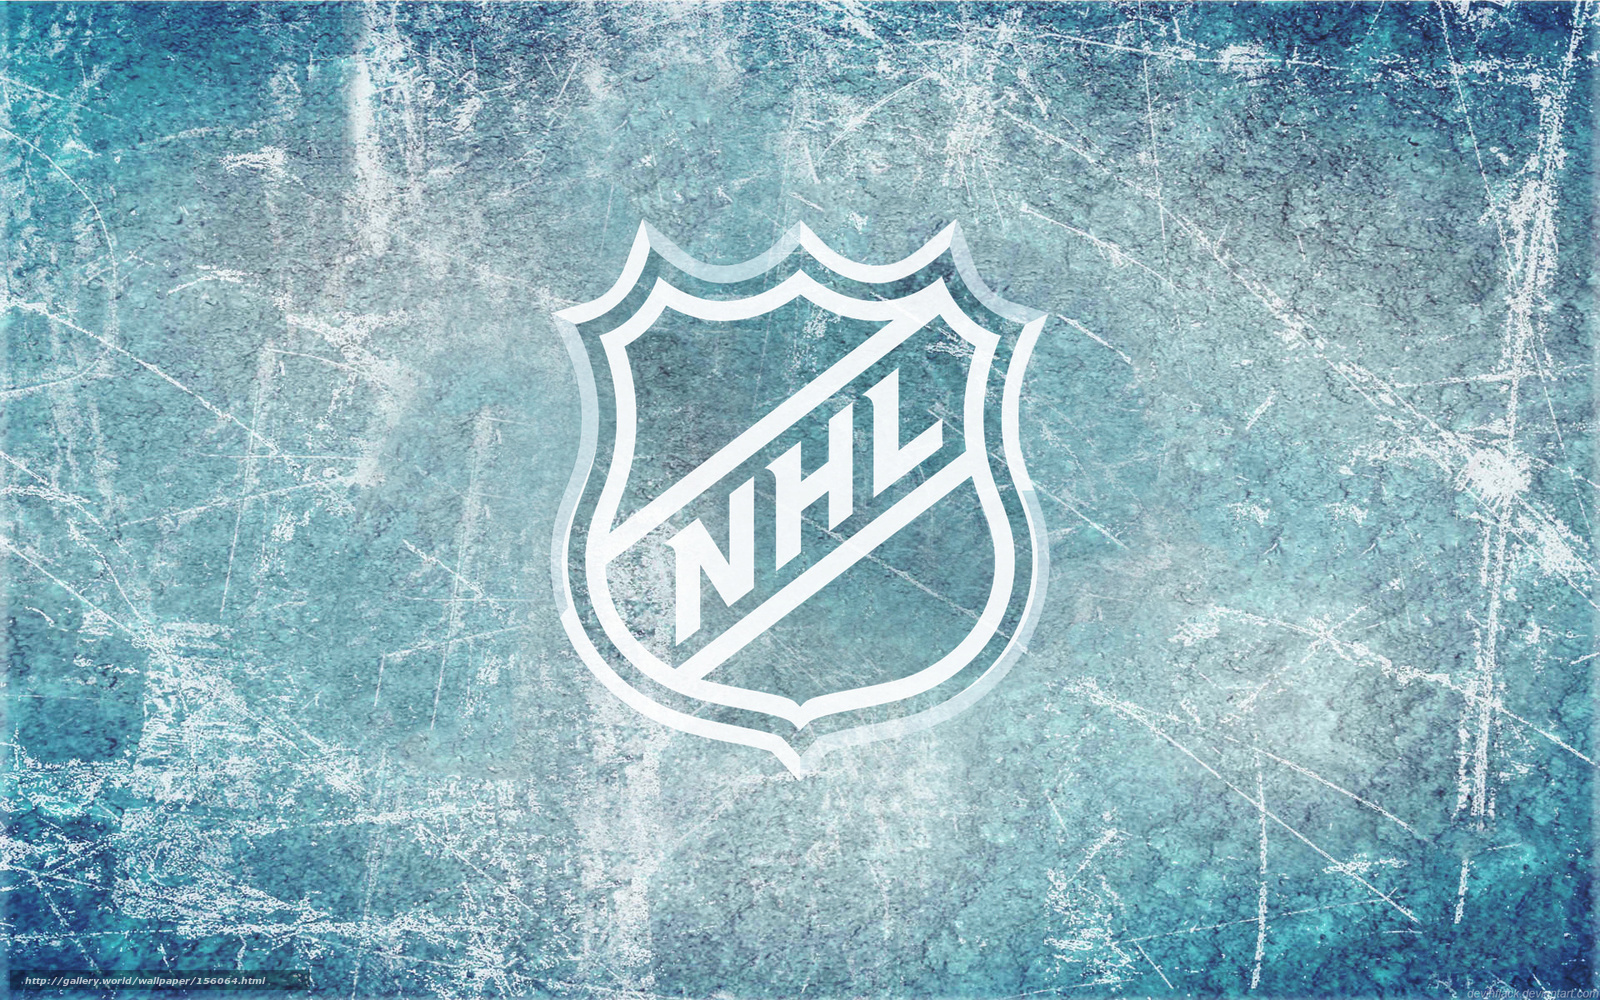 Download wallpaper sport hockey nhl free desktop wallpaper in the